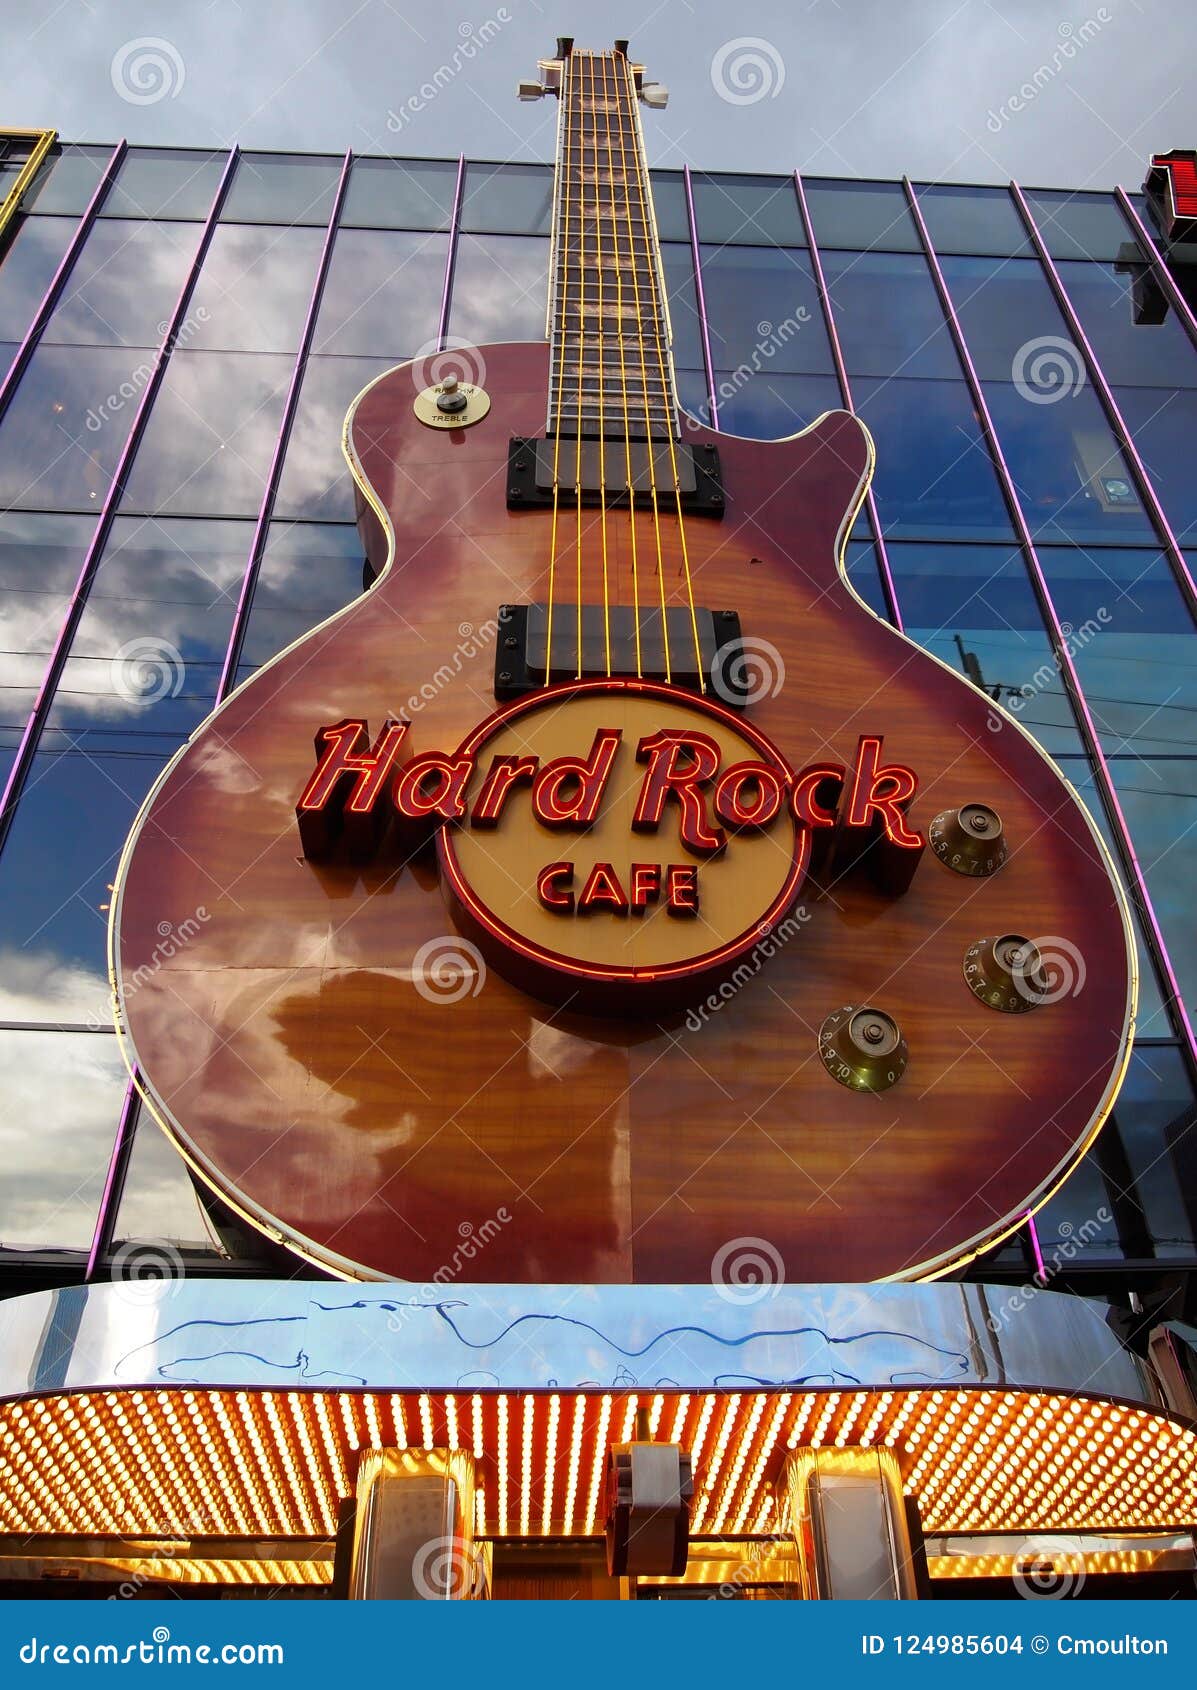 Hard Rock Cafe pin Las Vegas Hotel 4th of July 1998 National Glenwood Guitar 